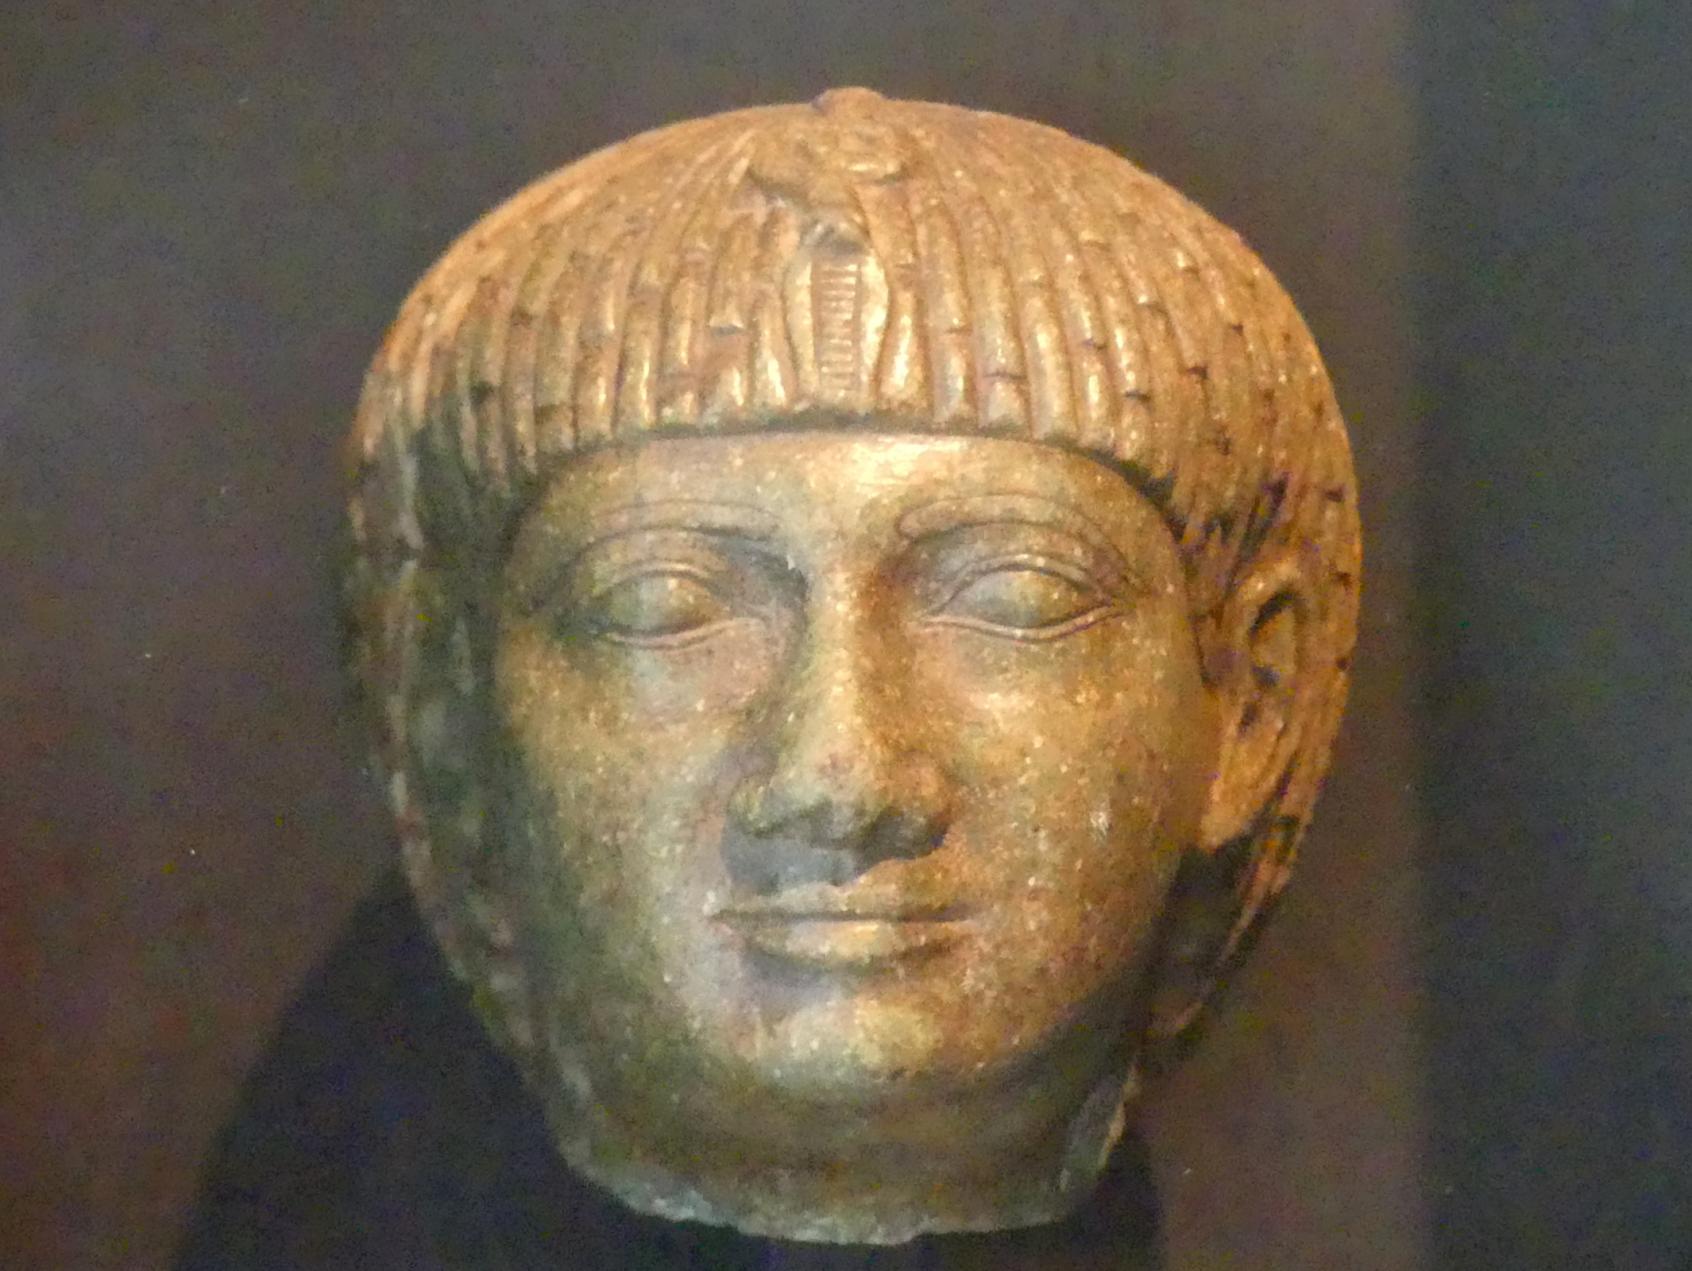 Kopf einer Statue des Pharao Osorkon I., 22. Dynastie, 821 - 690 v. Chr., 900 v. Chr.